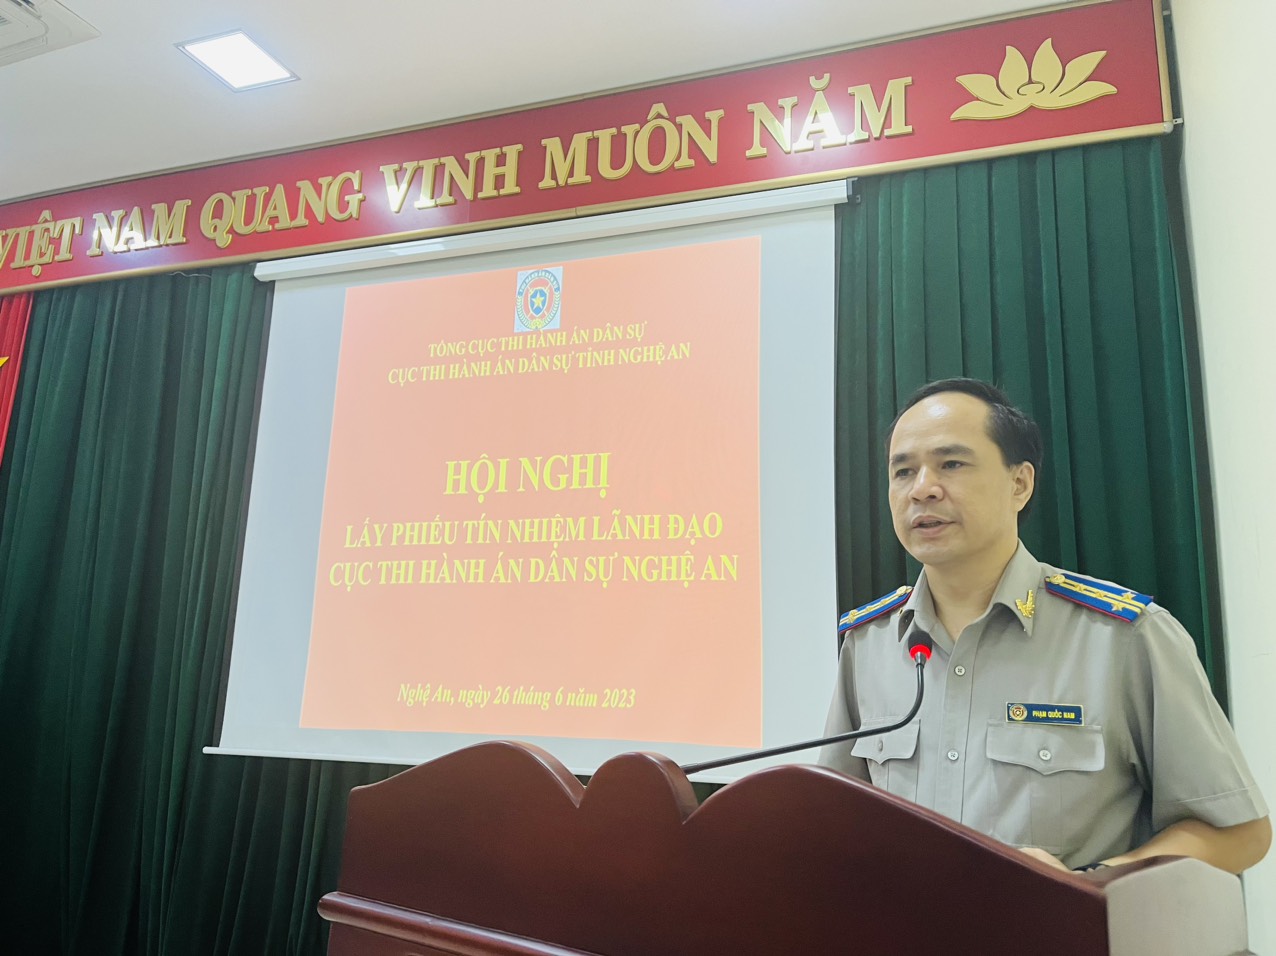 Cục Thi hành án dân sự tỉnh Nghệ An tổ chức Hội nghị lấy phiếu tín nhiệm Lãnh đạo Cục và Hội nghị giao ban đánh giá công tác THADS, theo dõi THAHC 9 tháng đầu năm 2023.